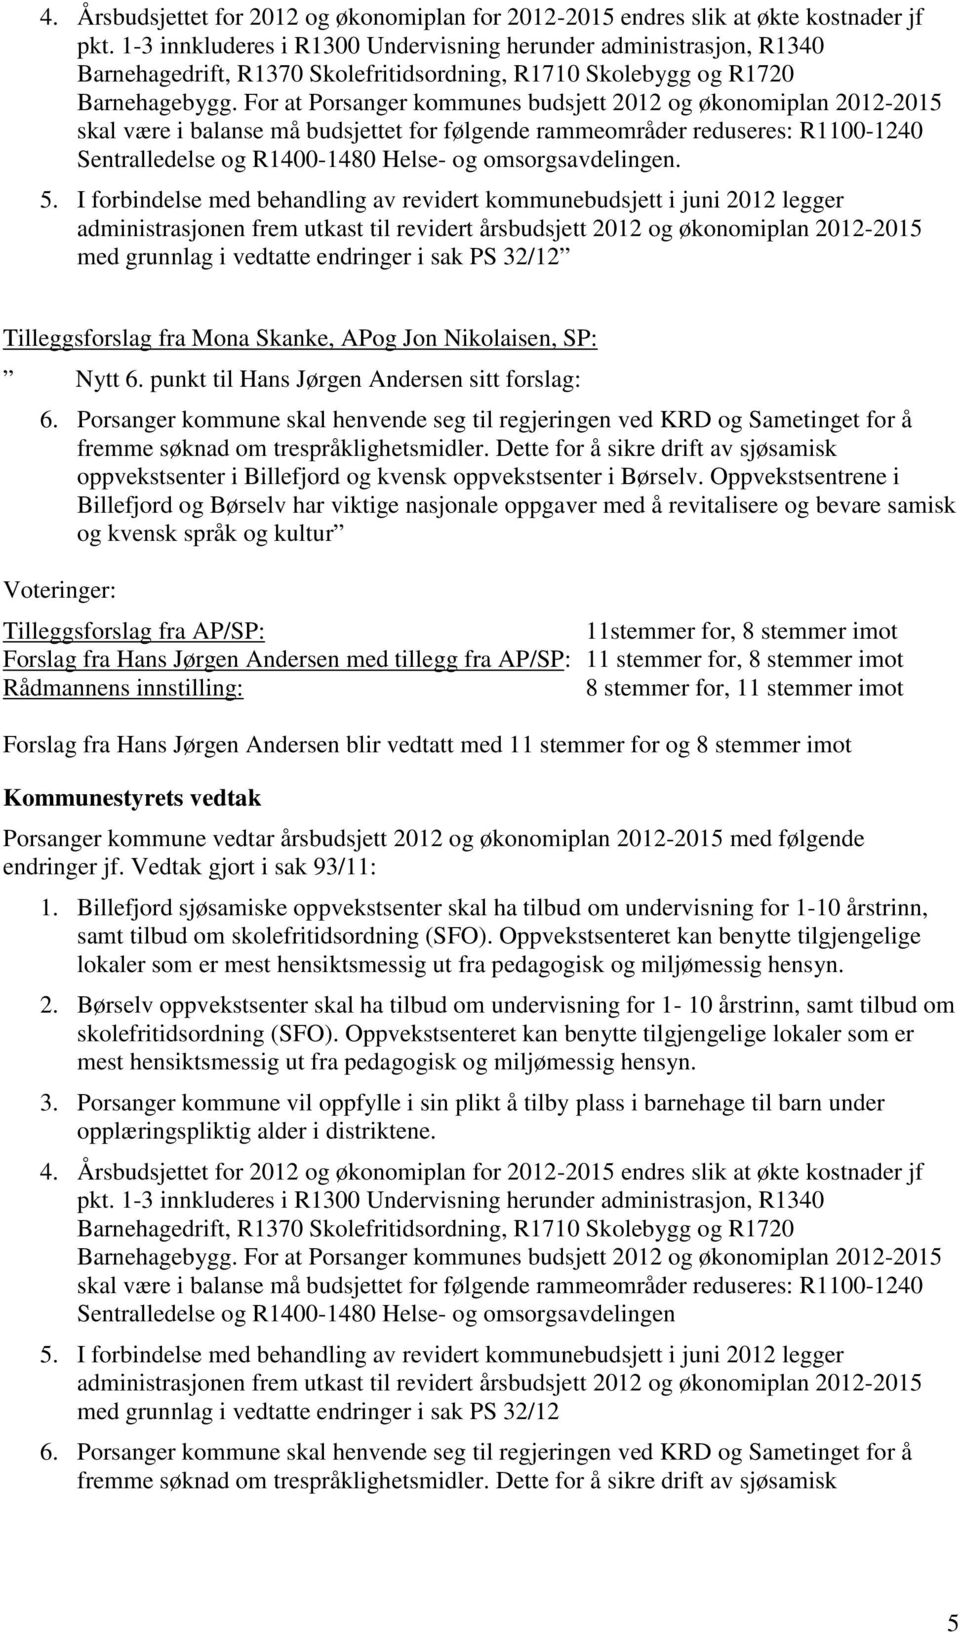 For at Porsanger kommunes budsjett 2012 og økonomiplan 2012-2015 skal være i balanse må budsjettet for følgende rammeområder reduseres: R1100-1240 Sentralledelse og R1400-1480 Helse- og